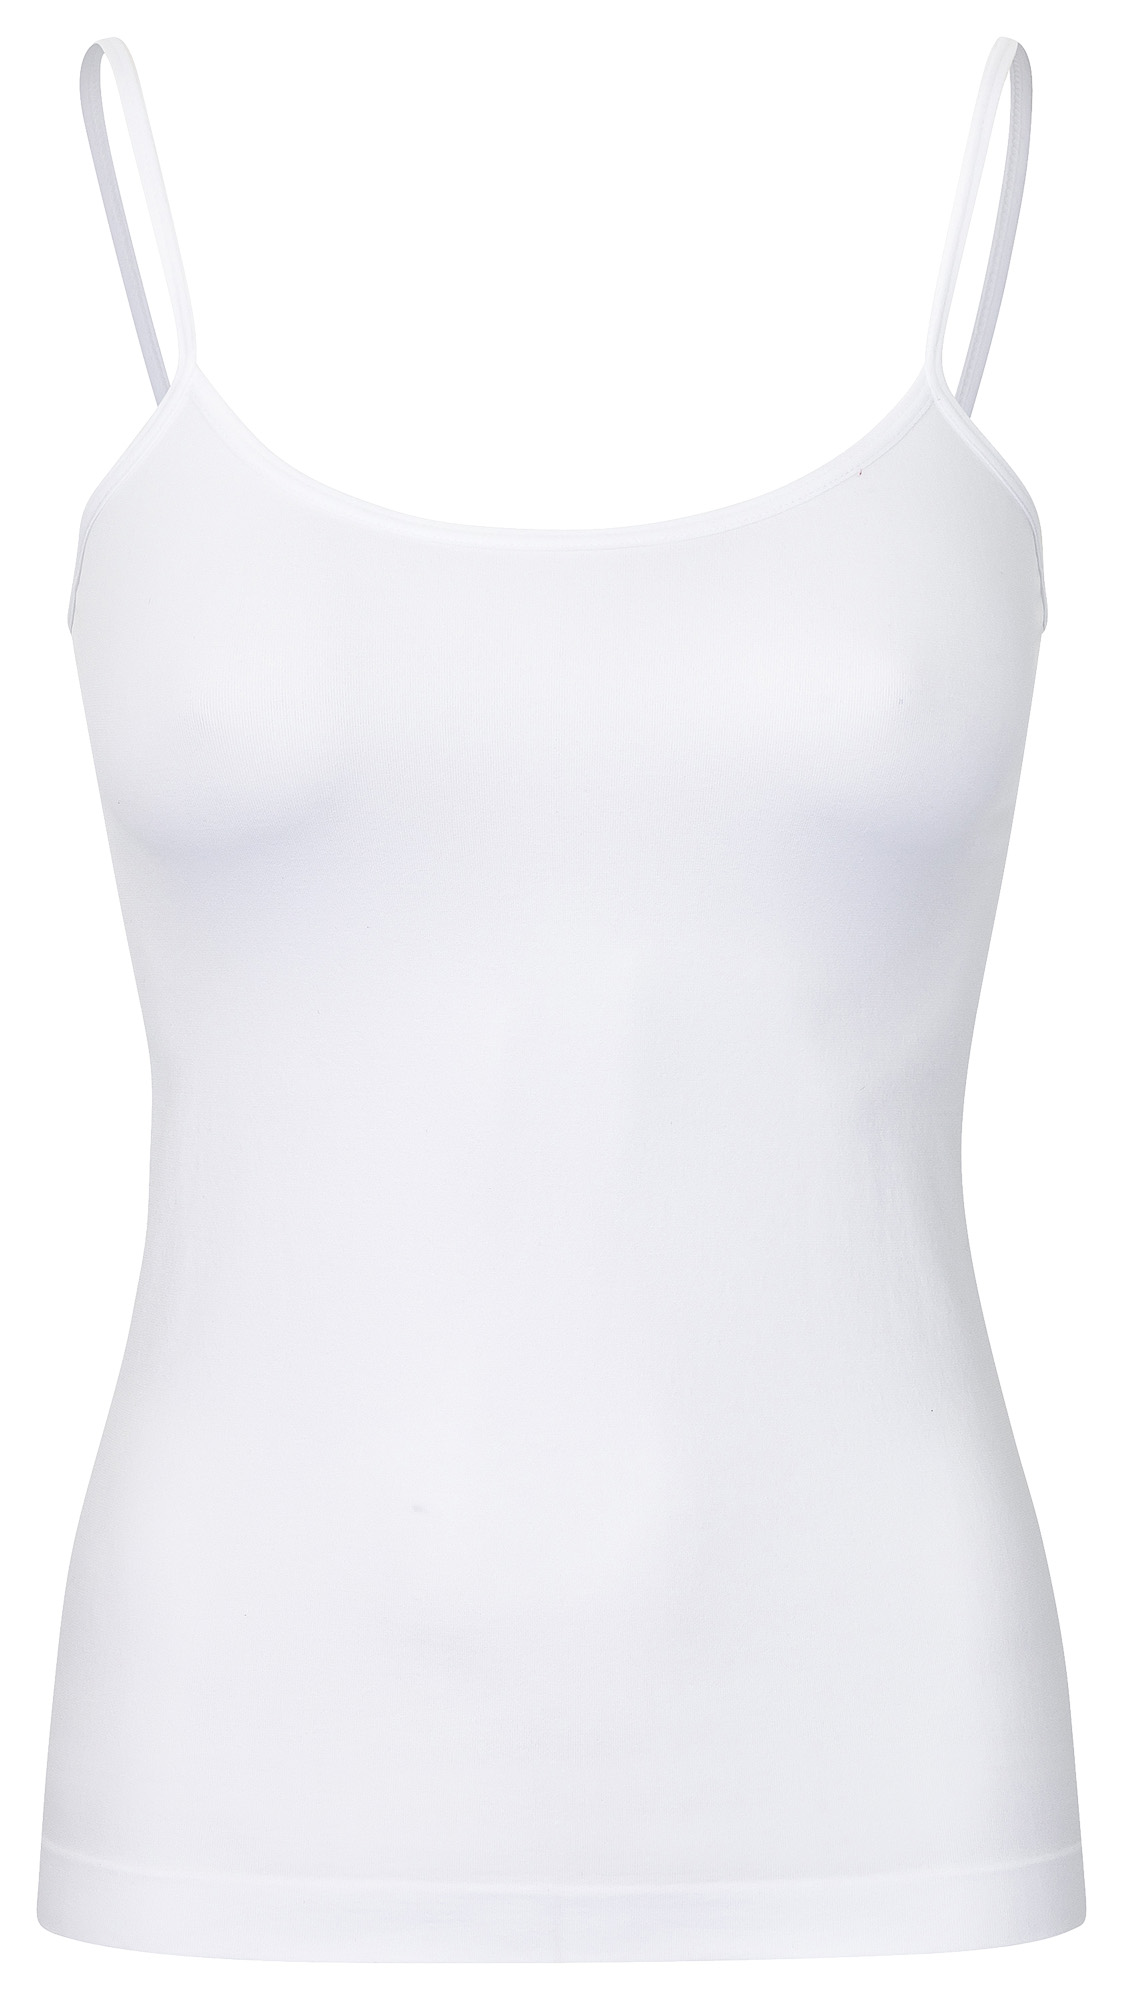 Damen Unterhemd & Panty Trägerhemd Microfaser Unterwäsche Set Top weiss